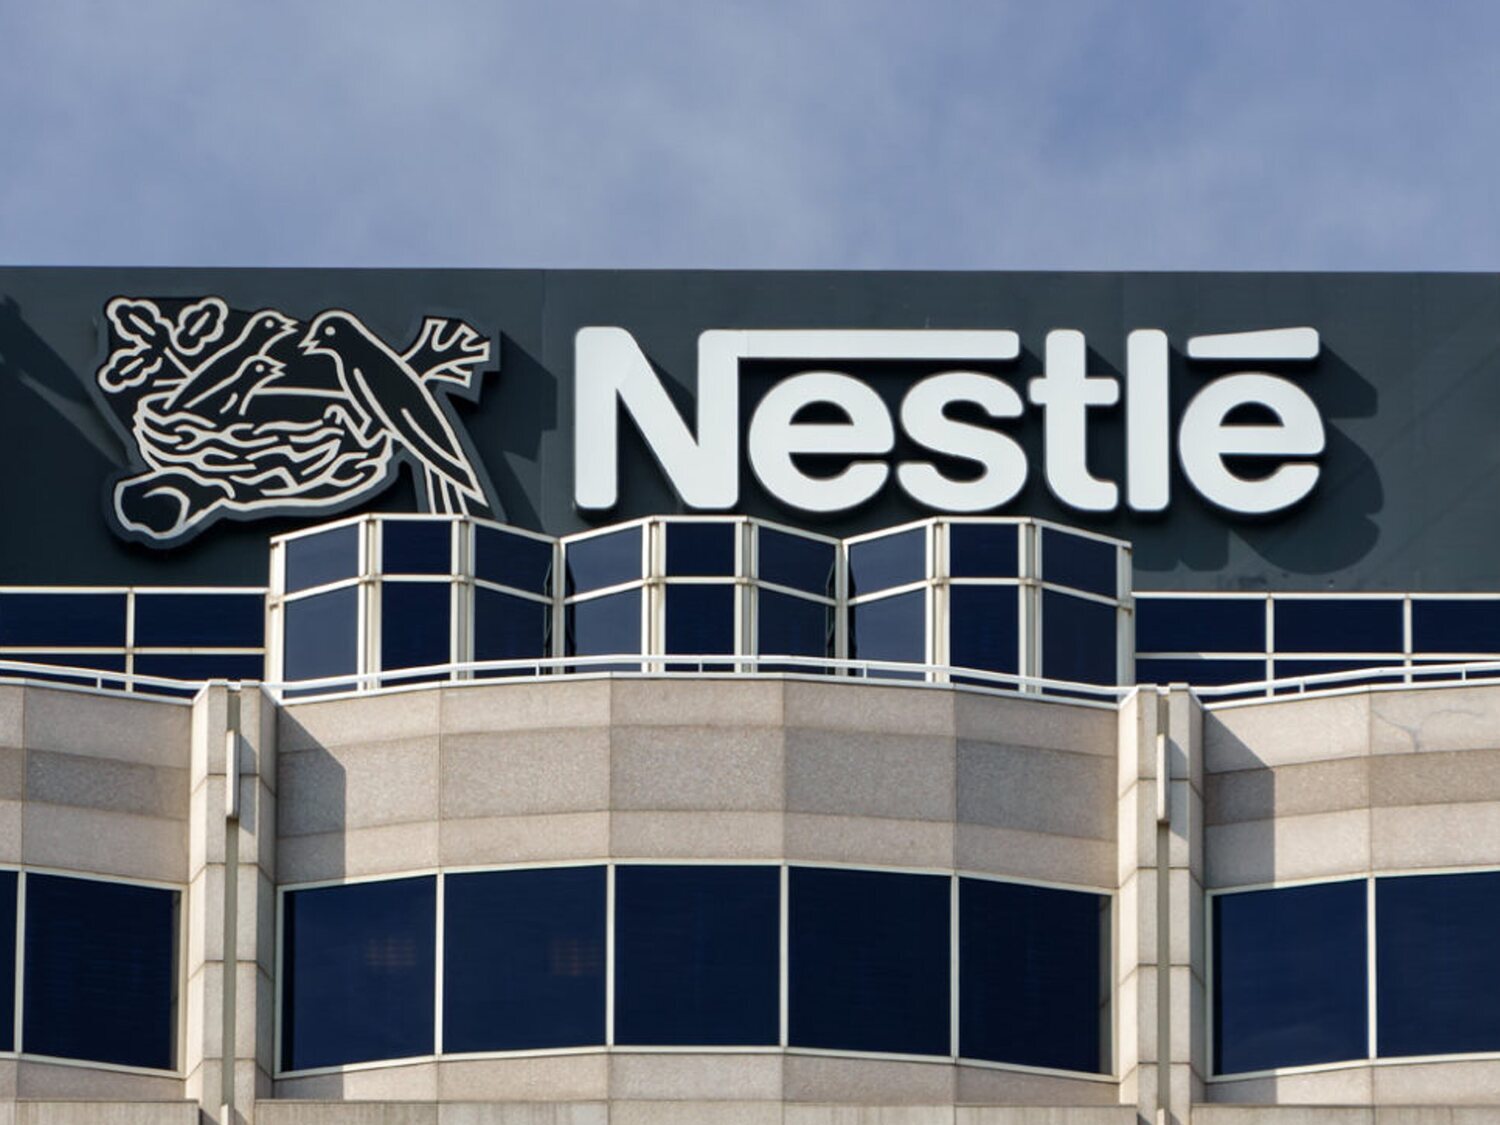 Sueldos de hasta 4.000 euros: las nuevas ofertas de empleo de Nestlé